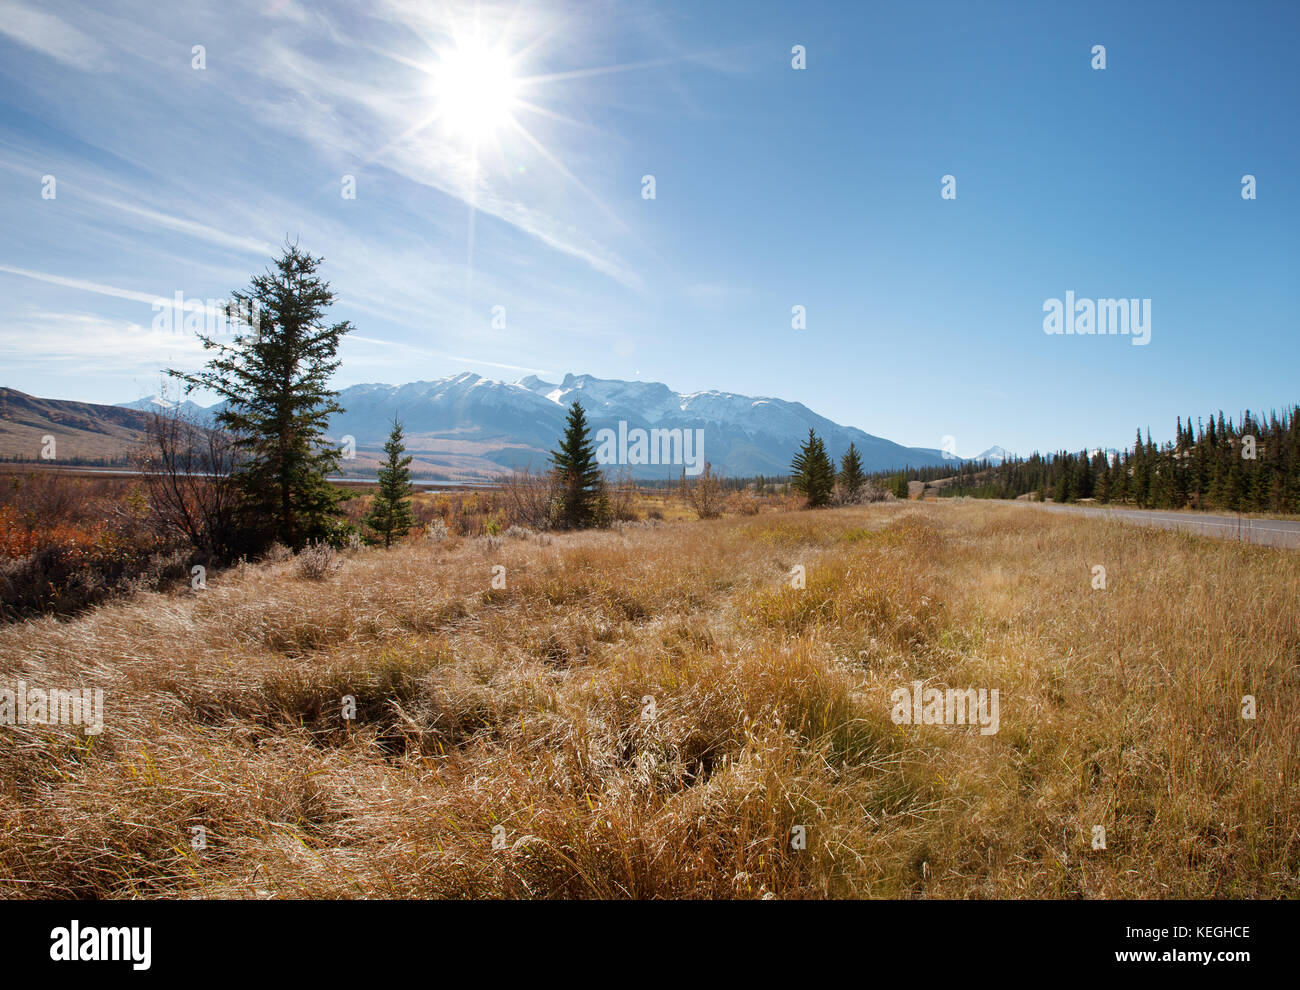 Las montañas rocosas canadienses en Jasper, Alberta con una llamarada solar por encima de un prado herboso Foto de stock